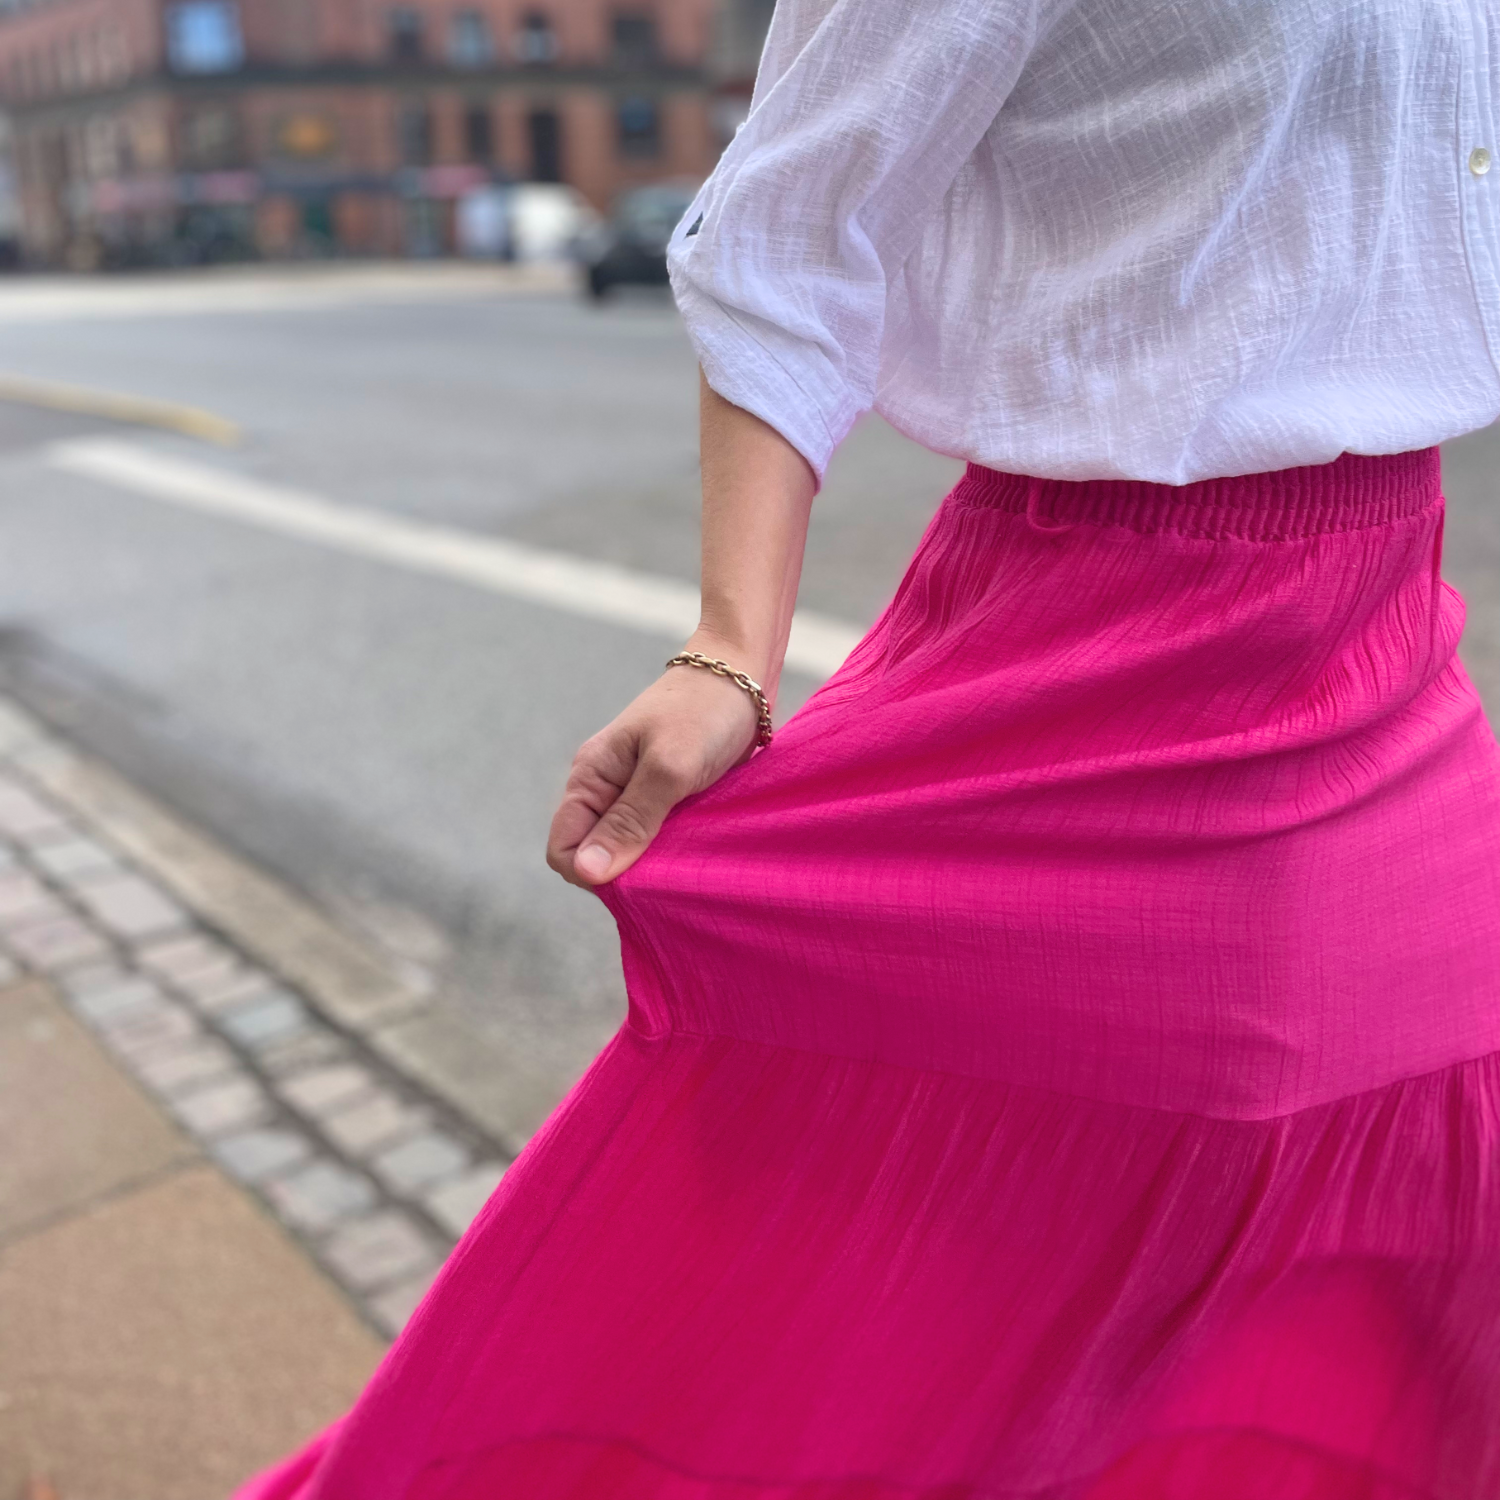 Hvid bluse møder iøjnefaldende pink nederdel – en livlig kontrast, der er både dristig og afslappet. Perfekt til sommerdage og lysere aftener.